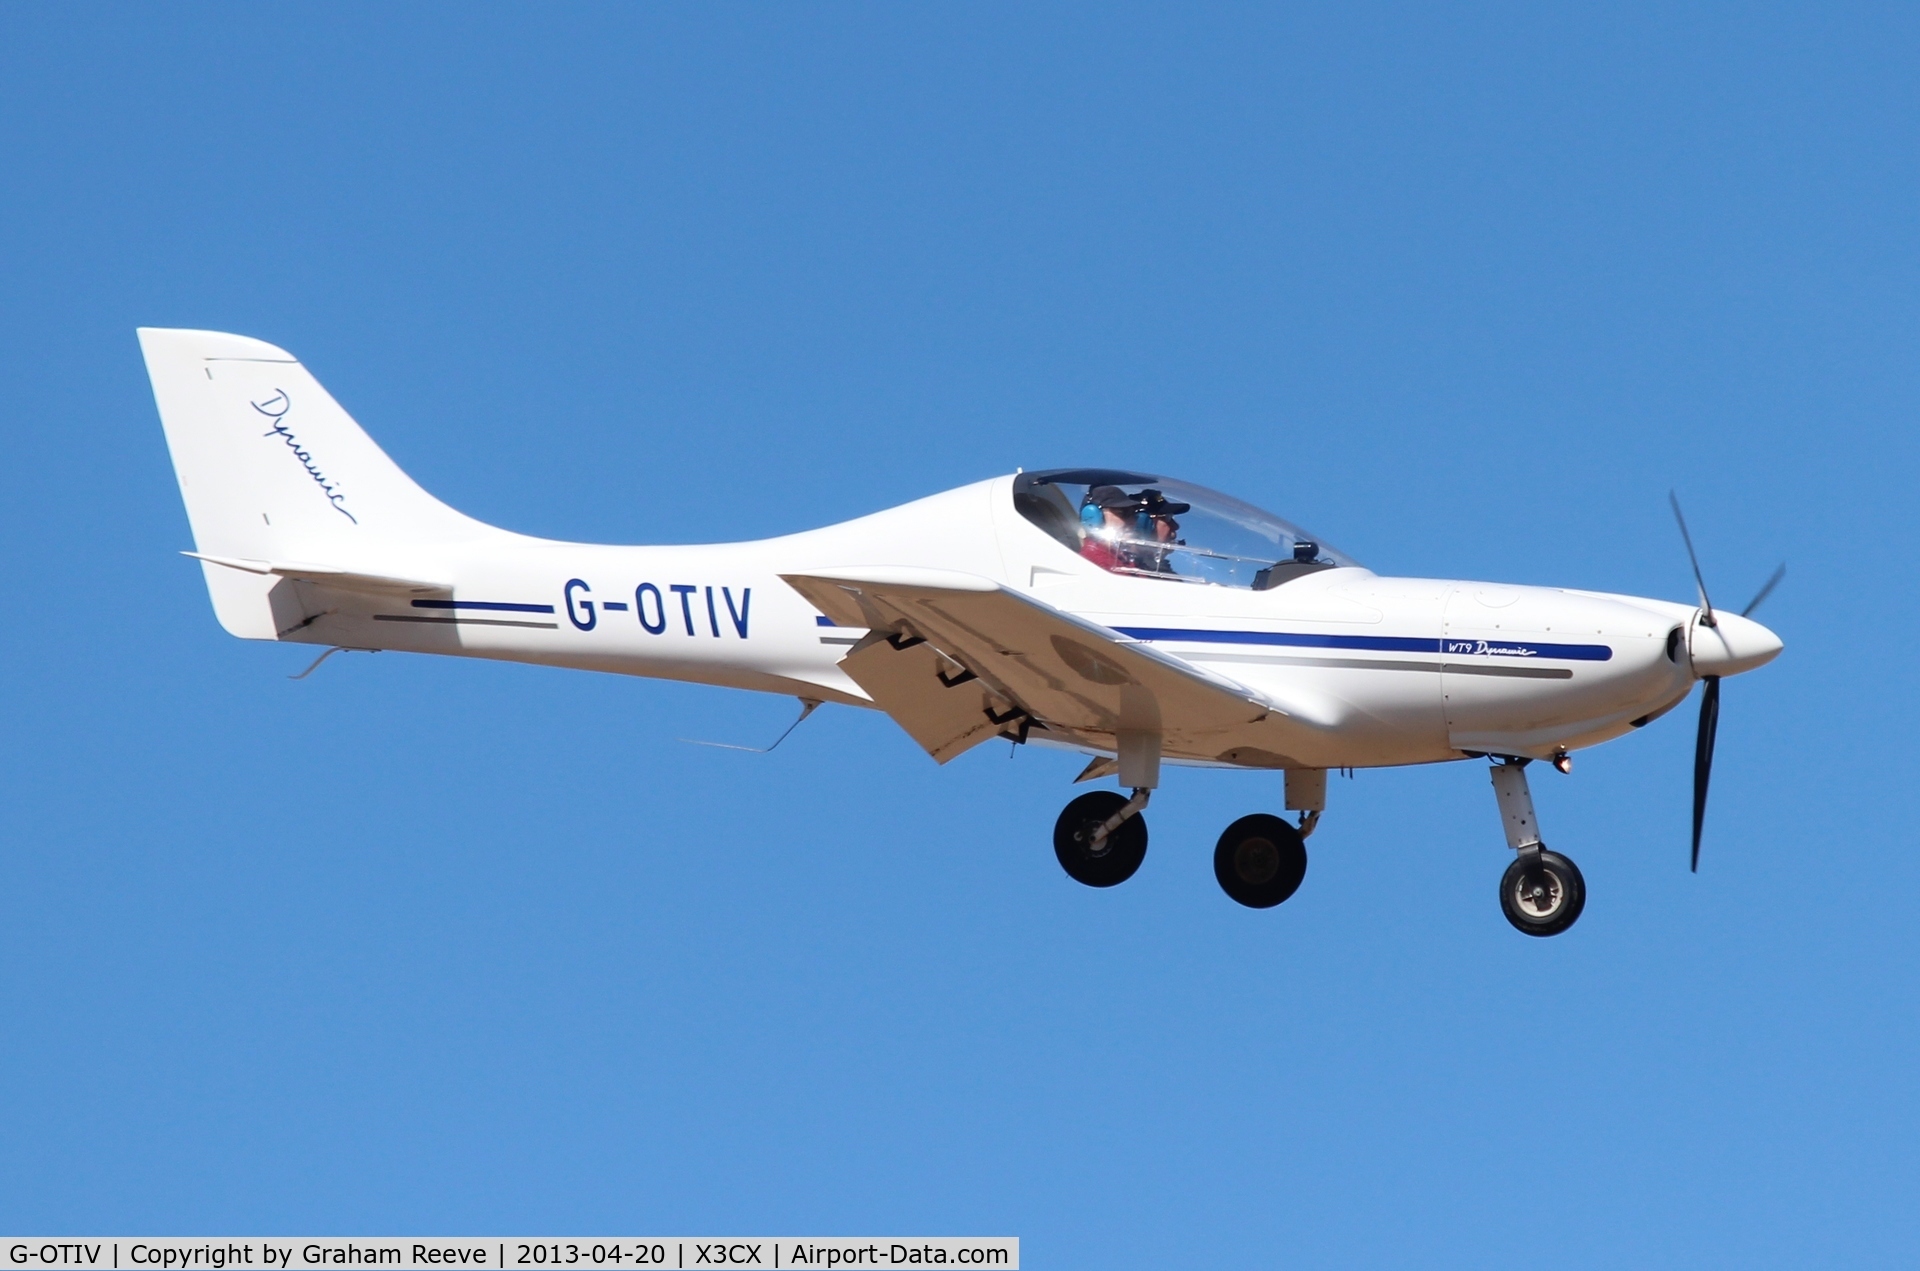 G-OTIV, 2007 Aerospool WT-9 Dynamic C/N DY194/2007, On final approach to land at Northrepps.